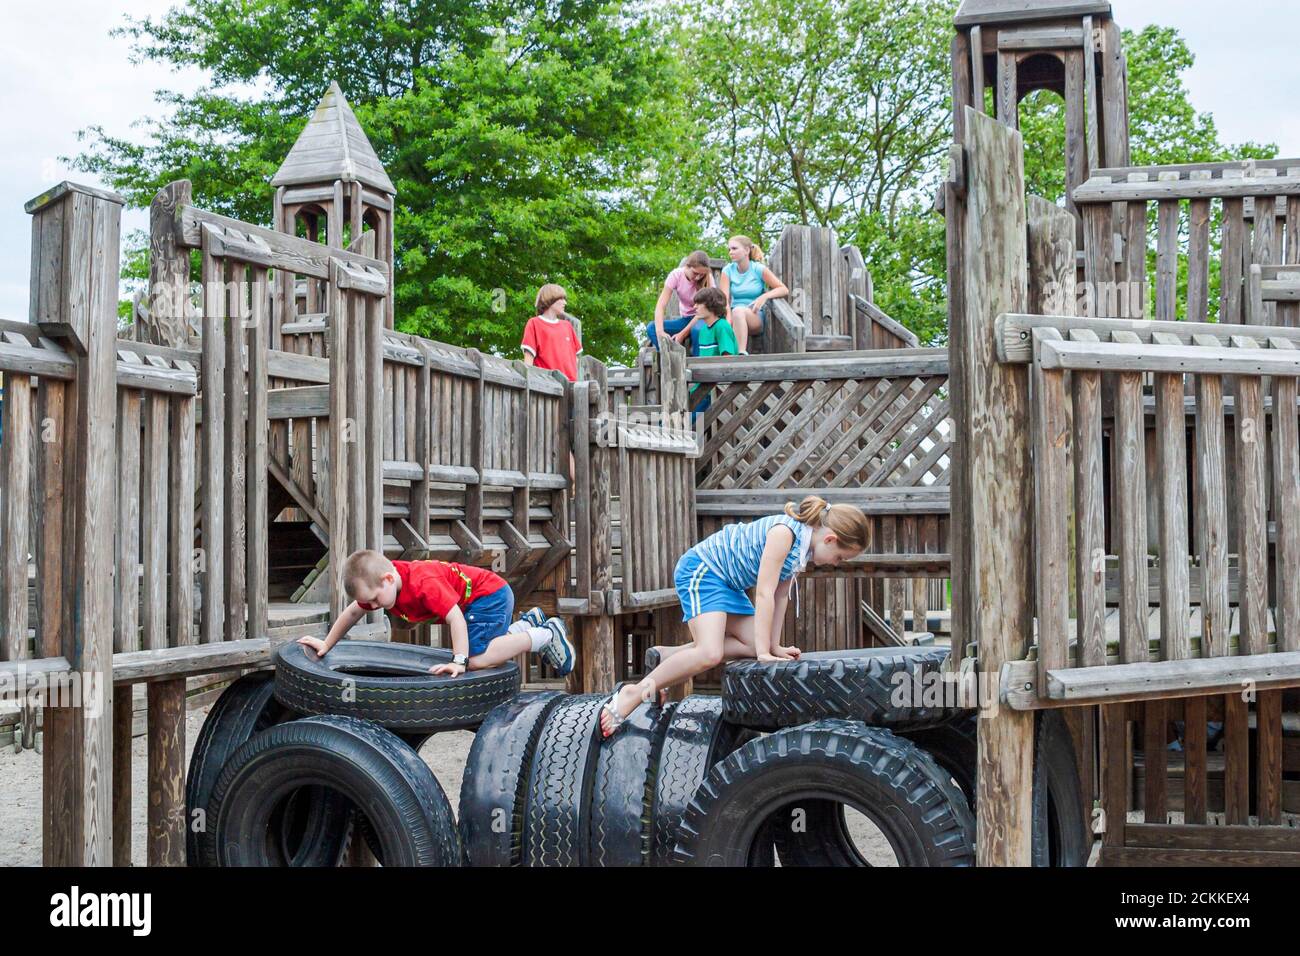 Newport News Virginia, Fort Fun Spielplatz Kinder Erholung Übung Fitness Workout spielen, Besucher Gruppe Menschen Person Szene in einem Foto Stockfoto